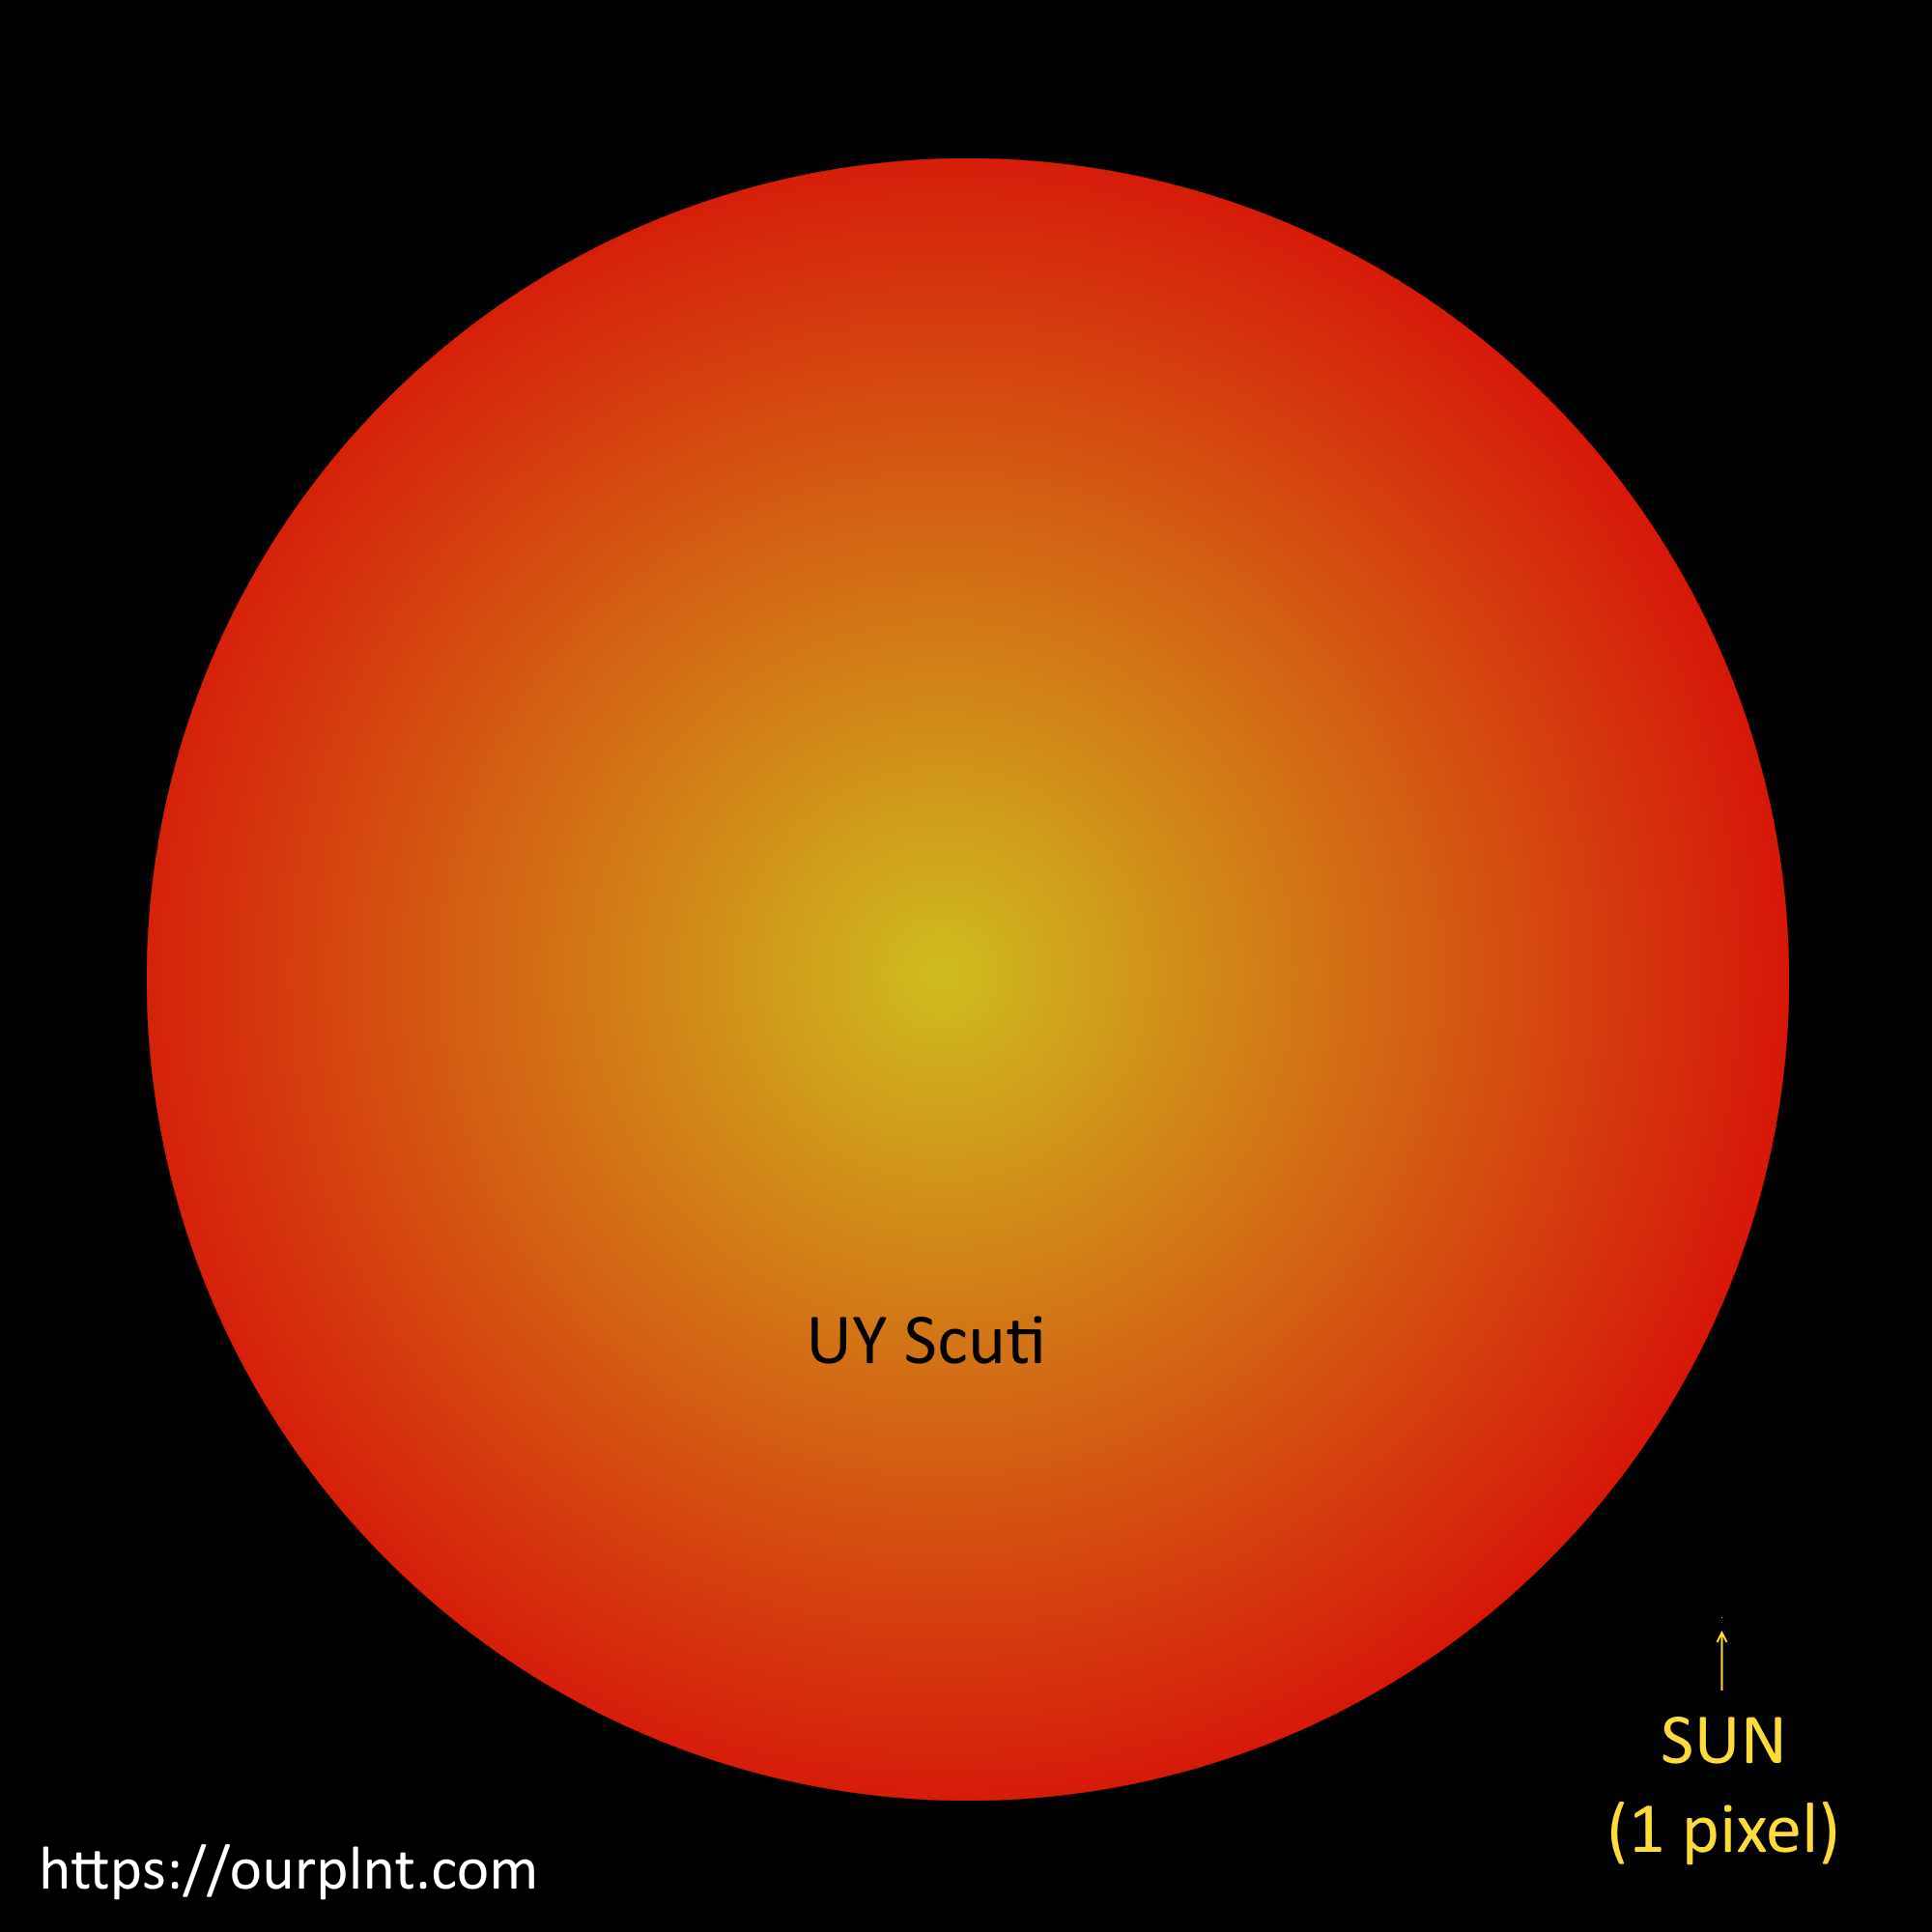 uy-scuti-vs-sun-1.jpg